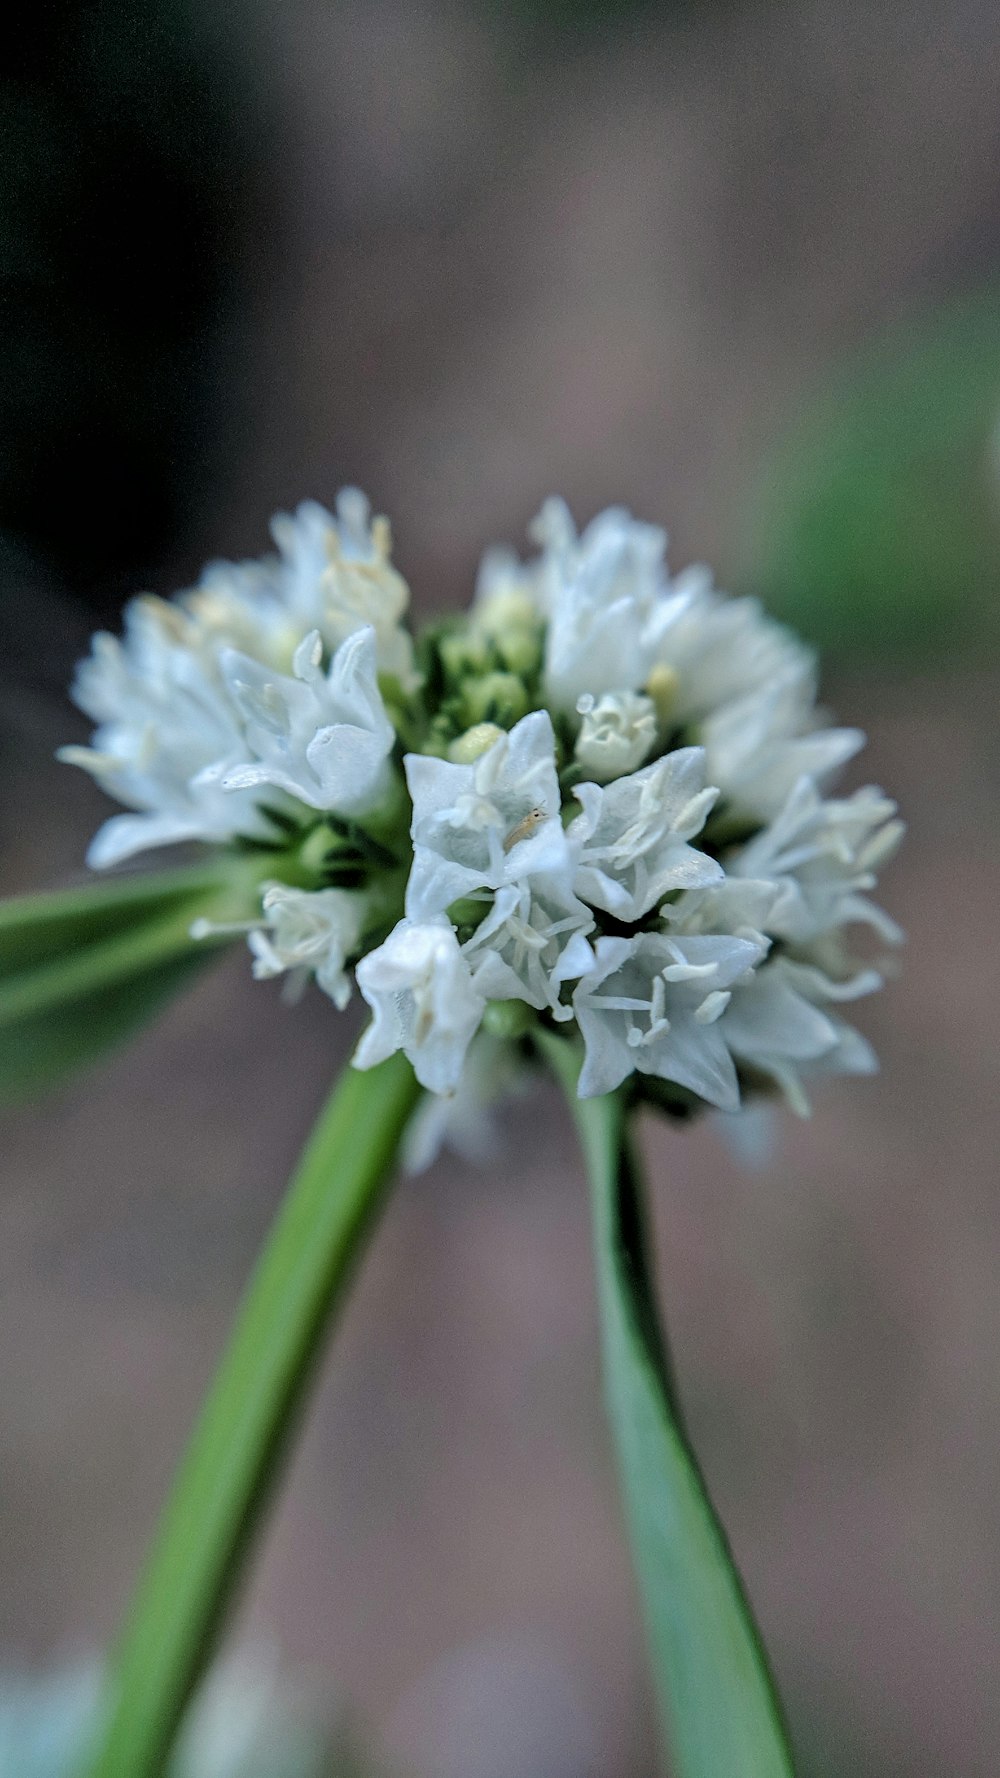 Foto de enfoque de flor blanca